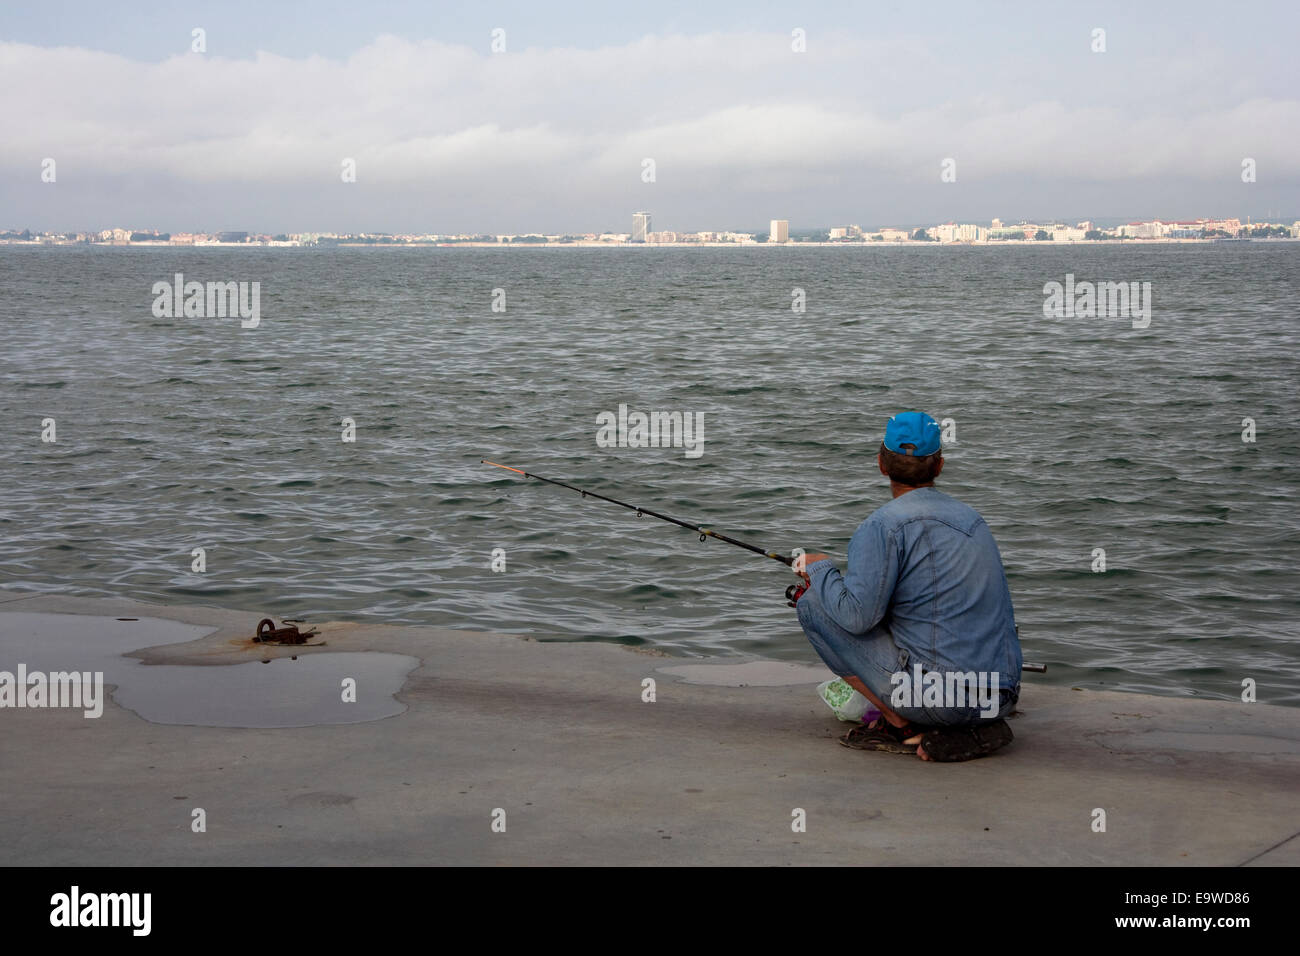 Homme dans un chapeau bleu est la pêche de l'évaluation par les pairs. Saint Vlas, Bulgarie. La mer Noire Banque D'Images